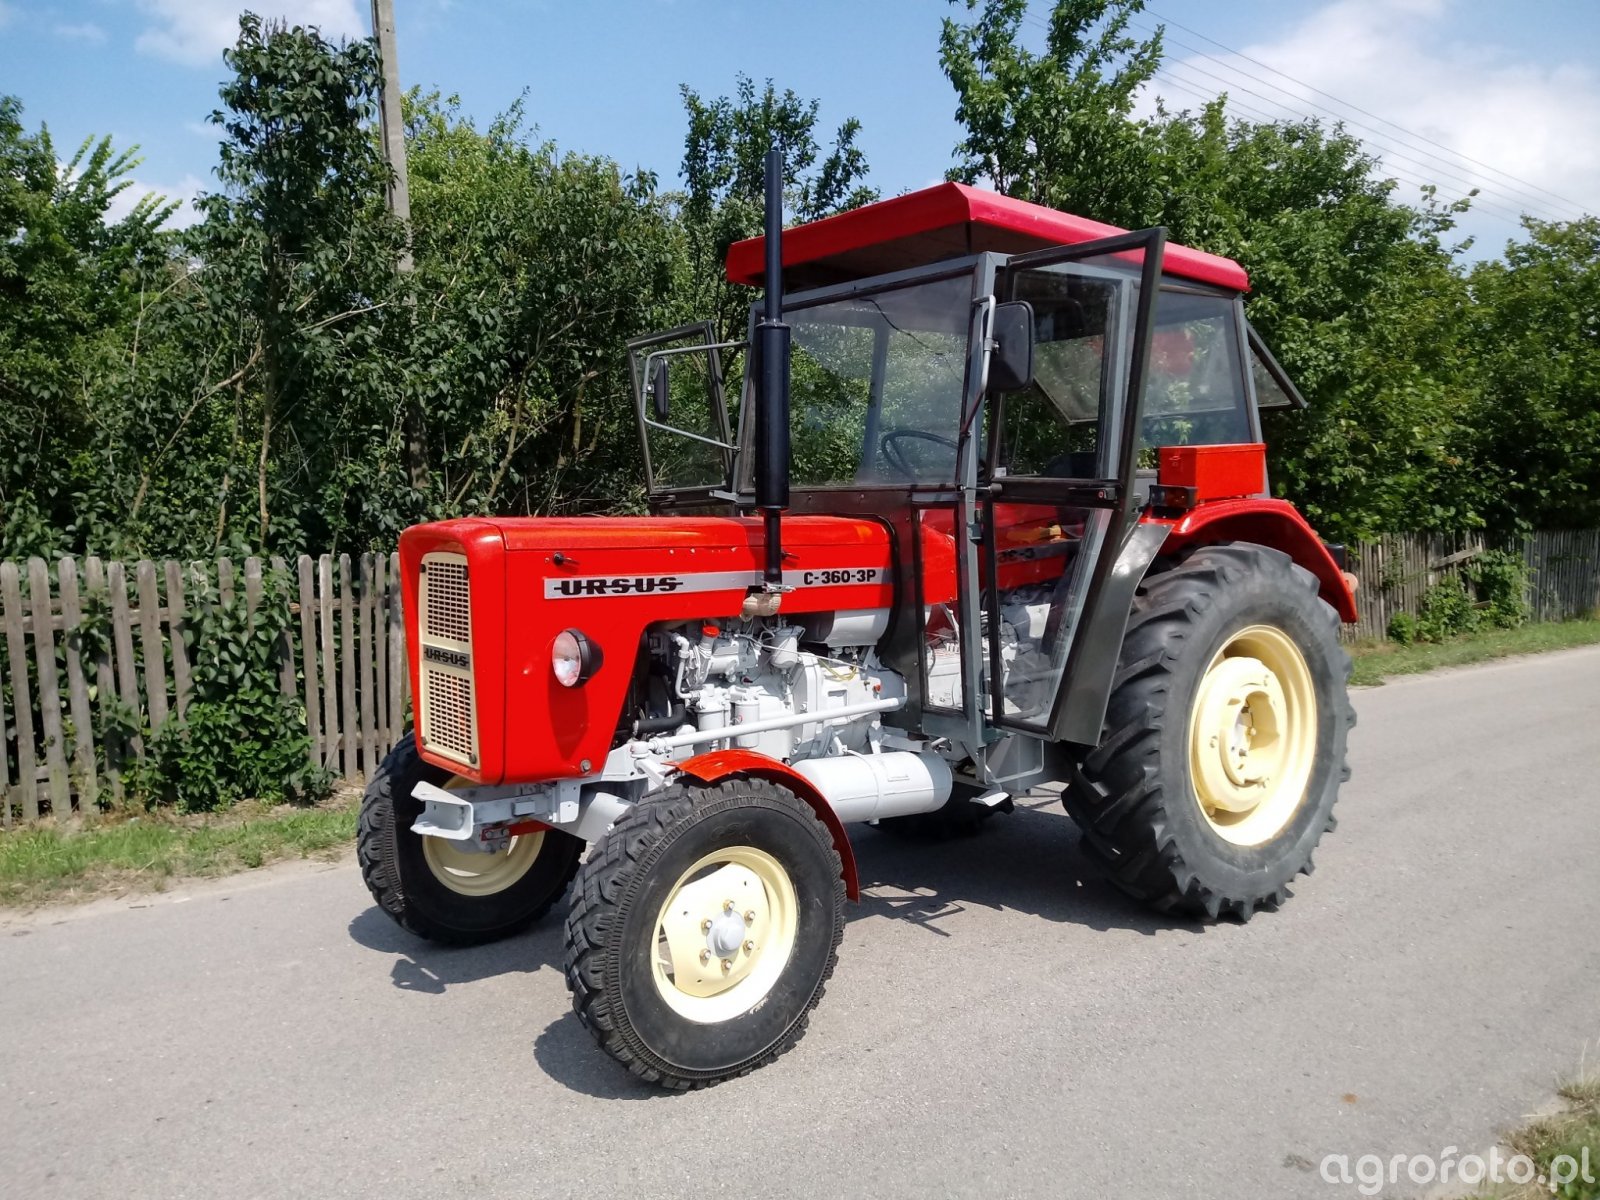 fotografia-traktor-ursus-c-360-3p-732794-galeria-rolnicza-agrofoto